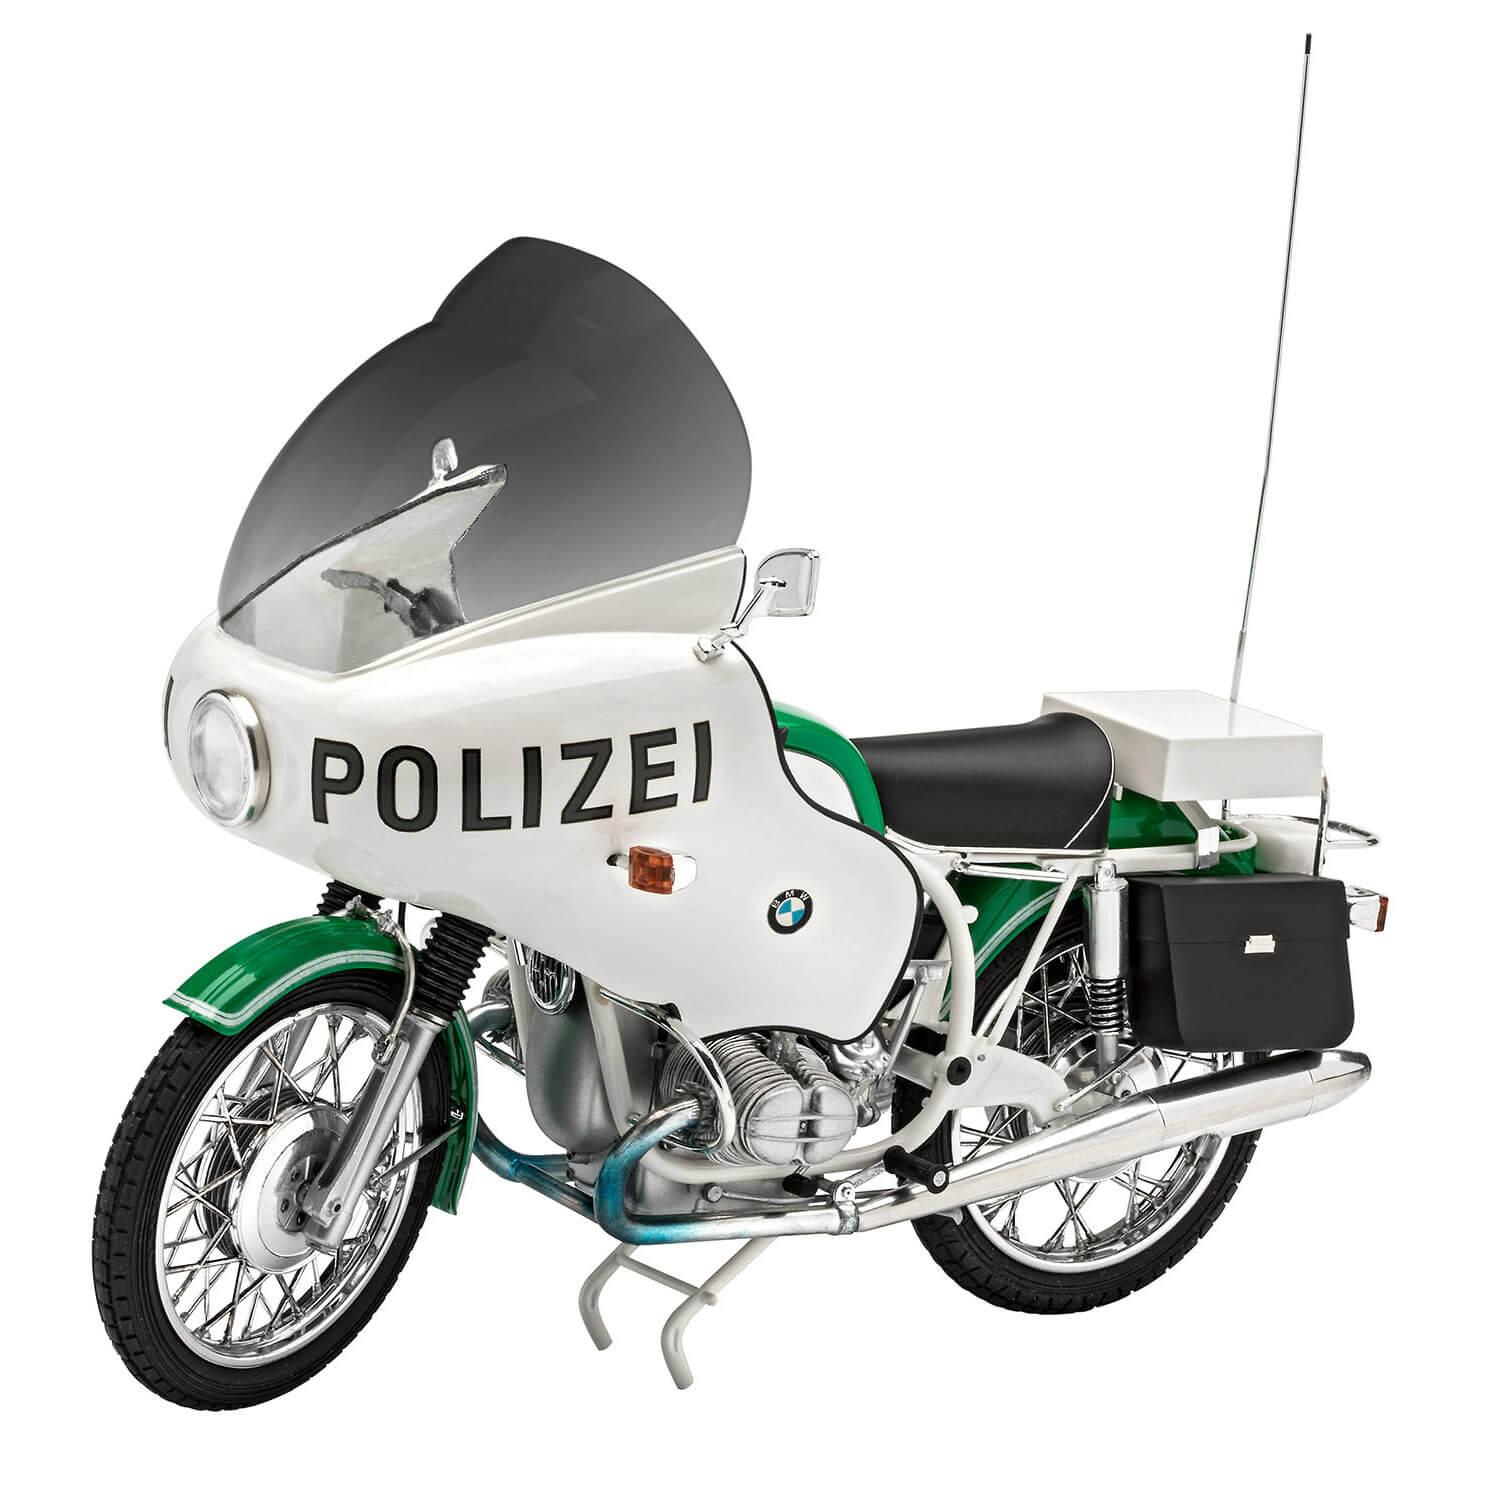 Maquette moto : BMW R75/5 Police - Revell - Rue des Maquettes